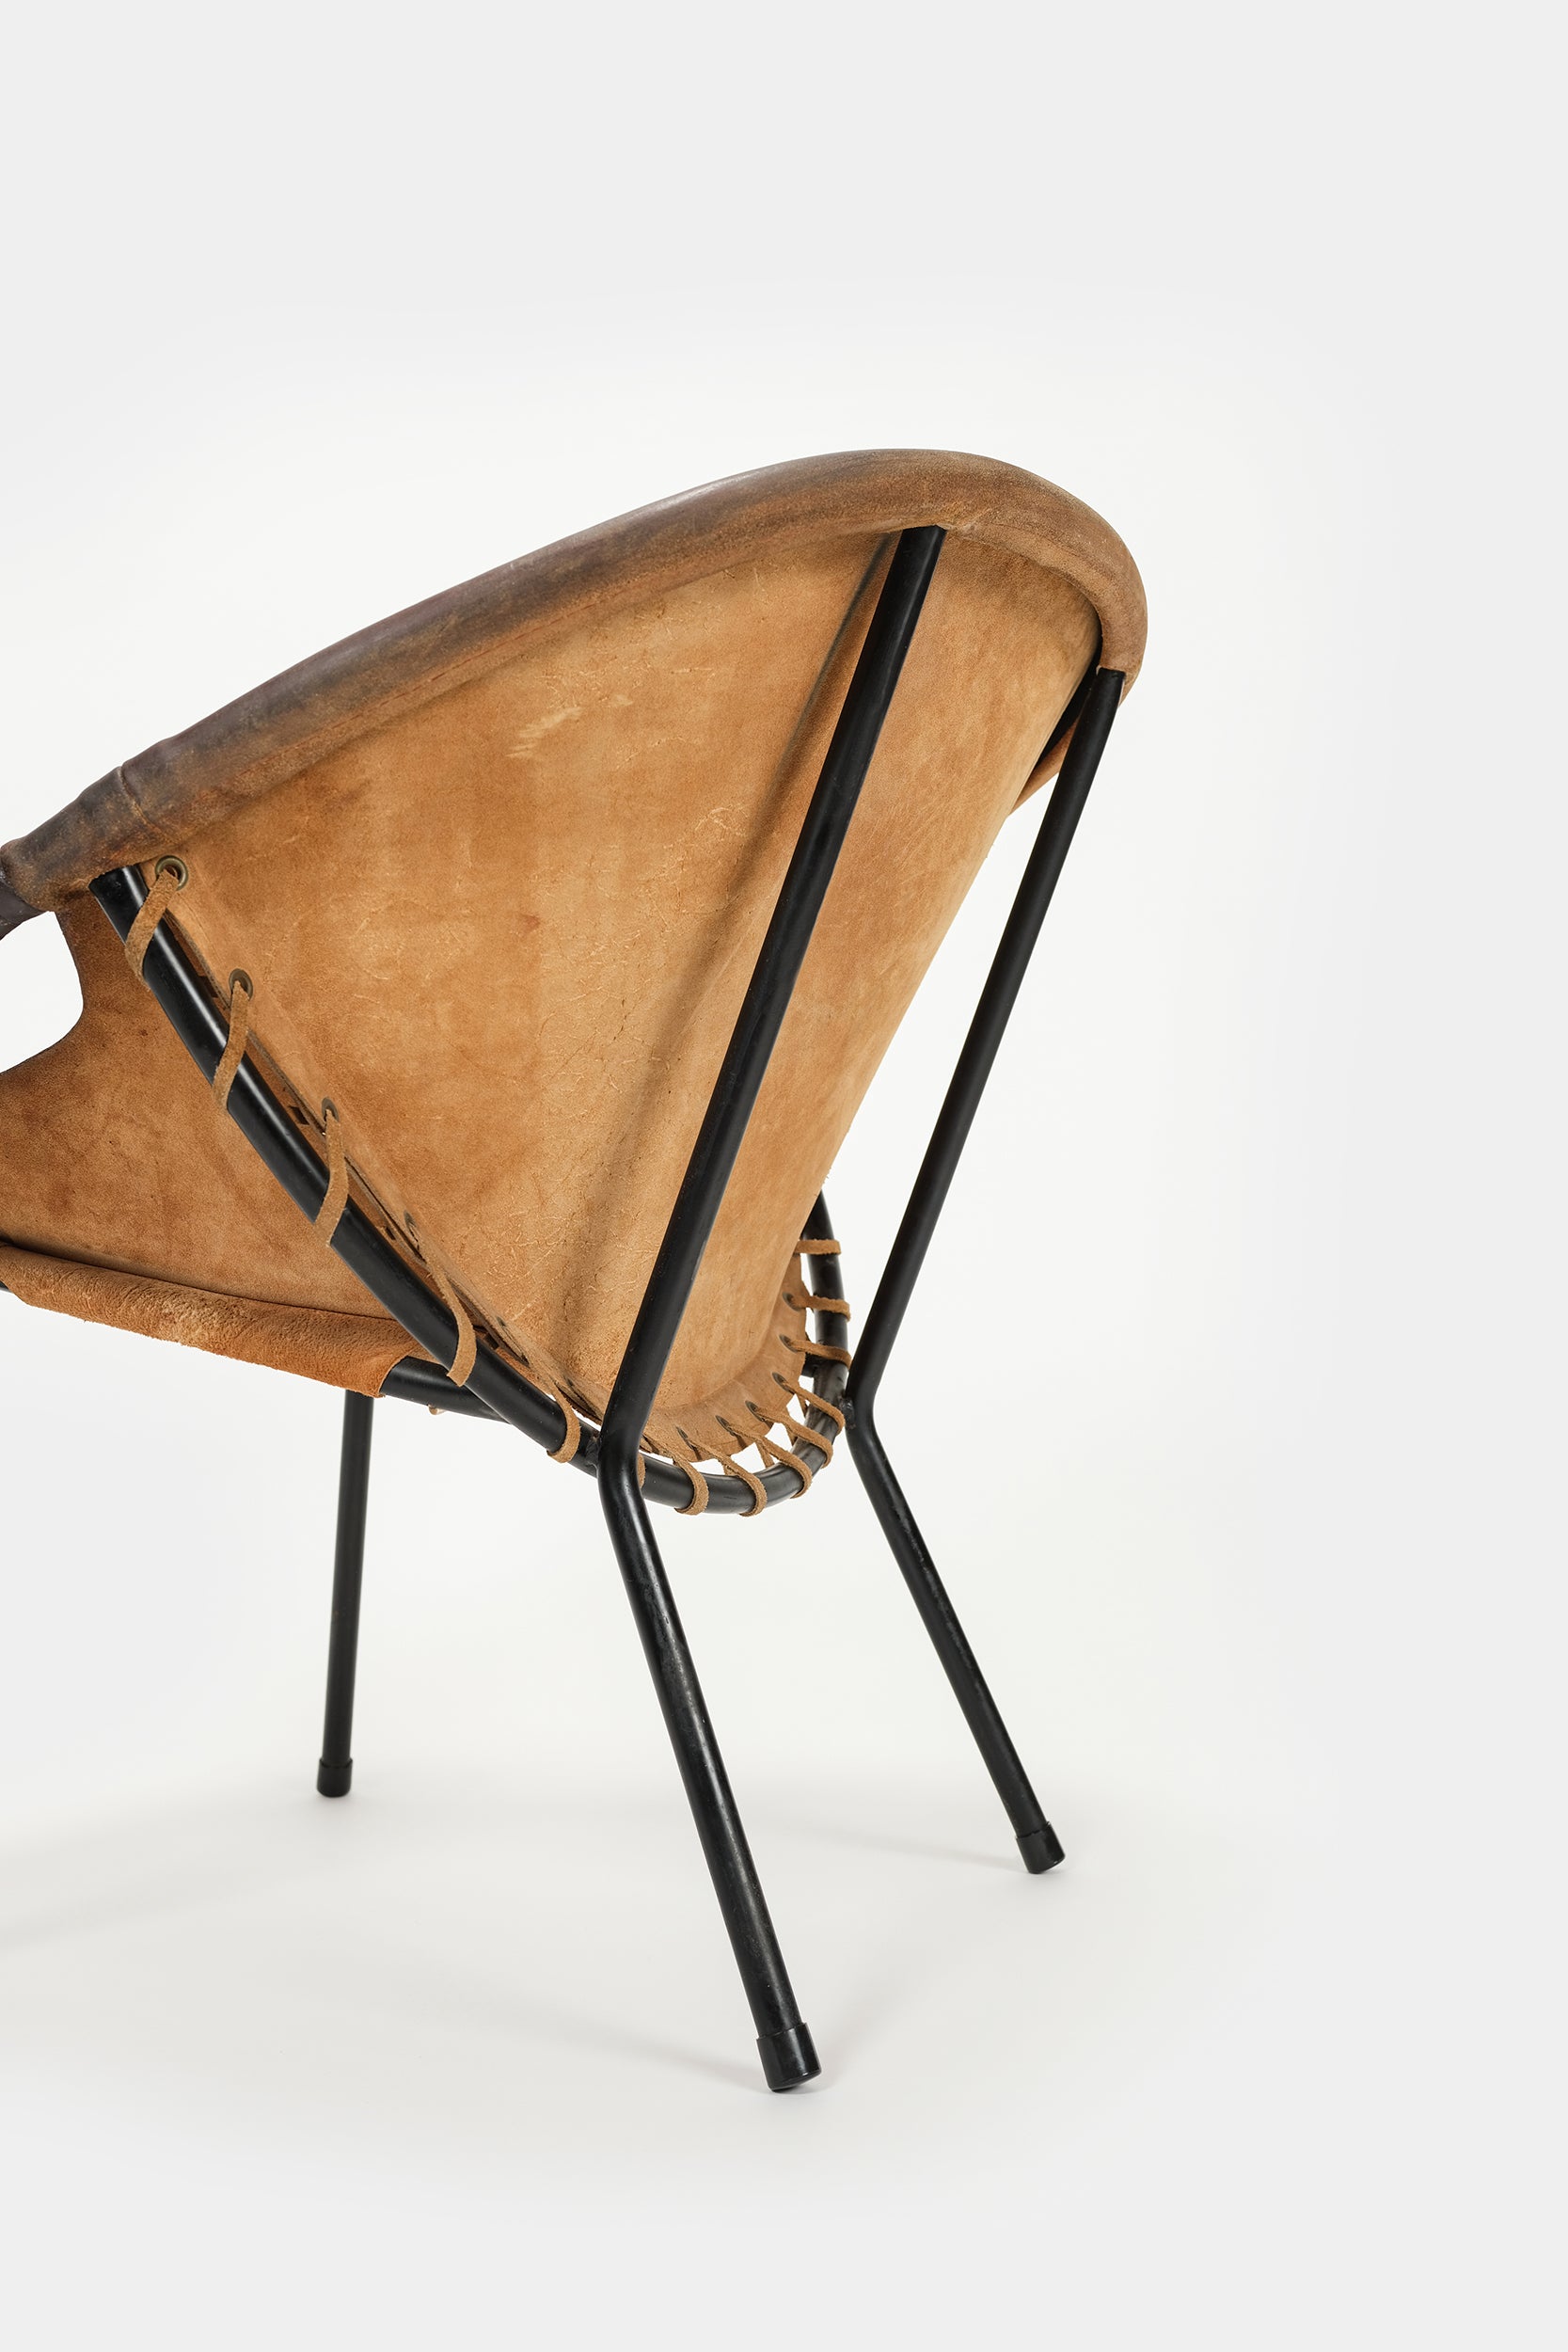 Paar Circle Chairs Wildleder Frankreich 60er